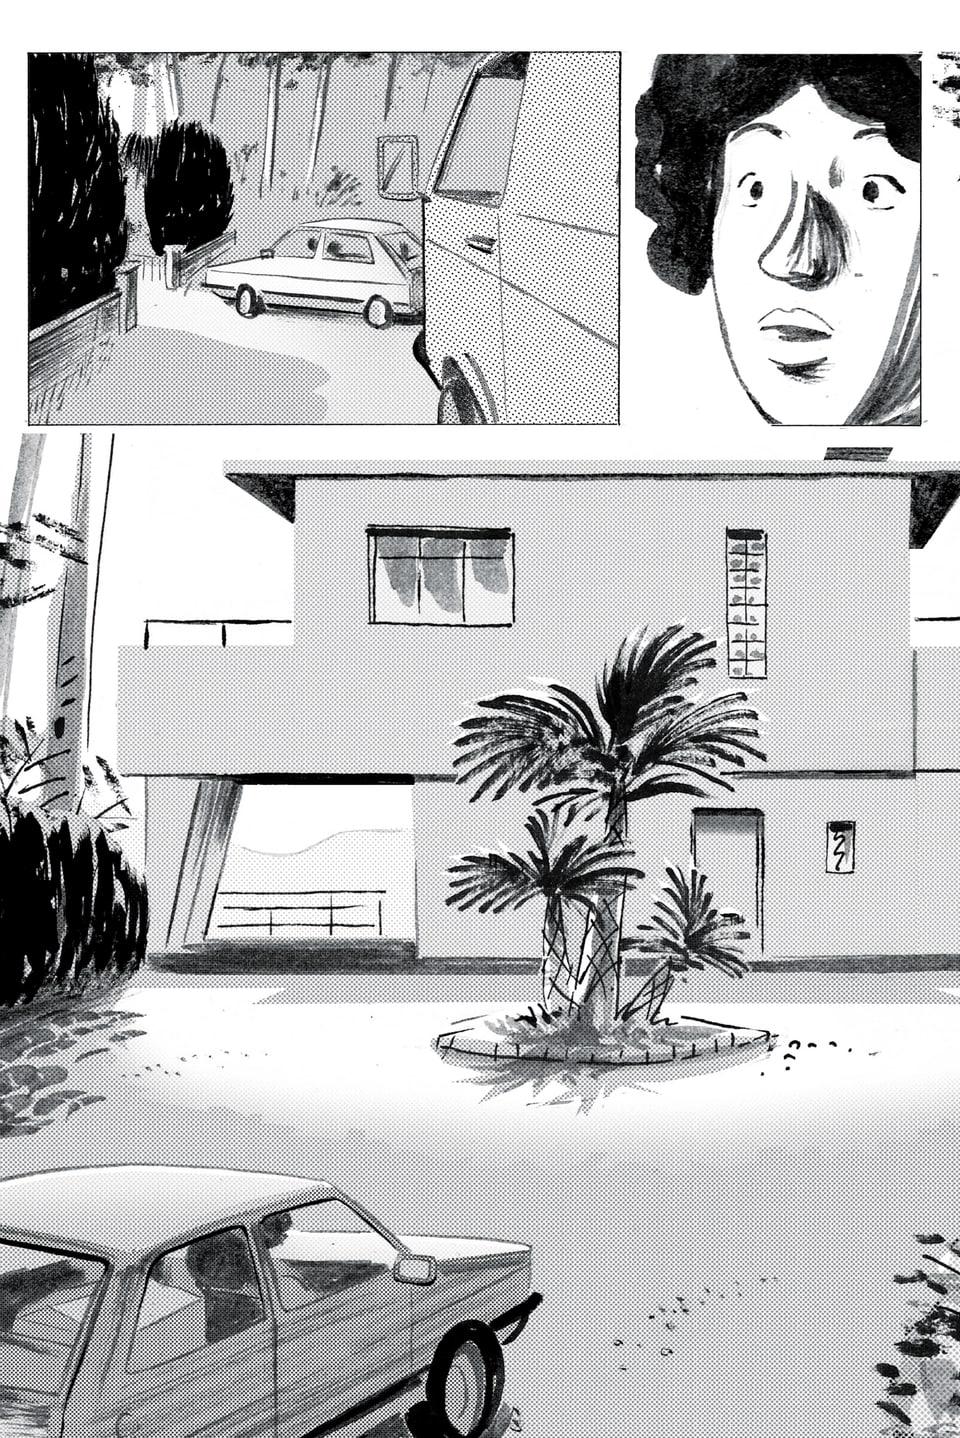 Eine Comicseite bestehend aus drei Bildern: Zwei Autos, ein Frauengesicht, ein Auto vor einem Haus.